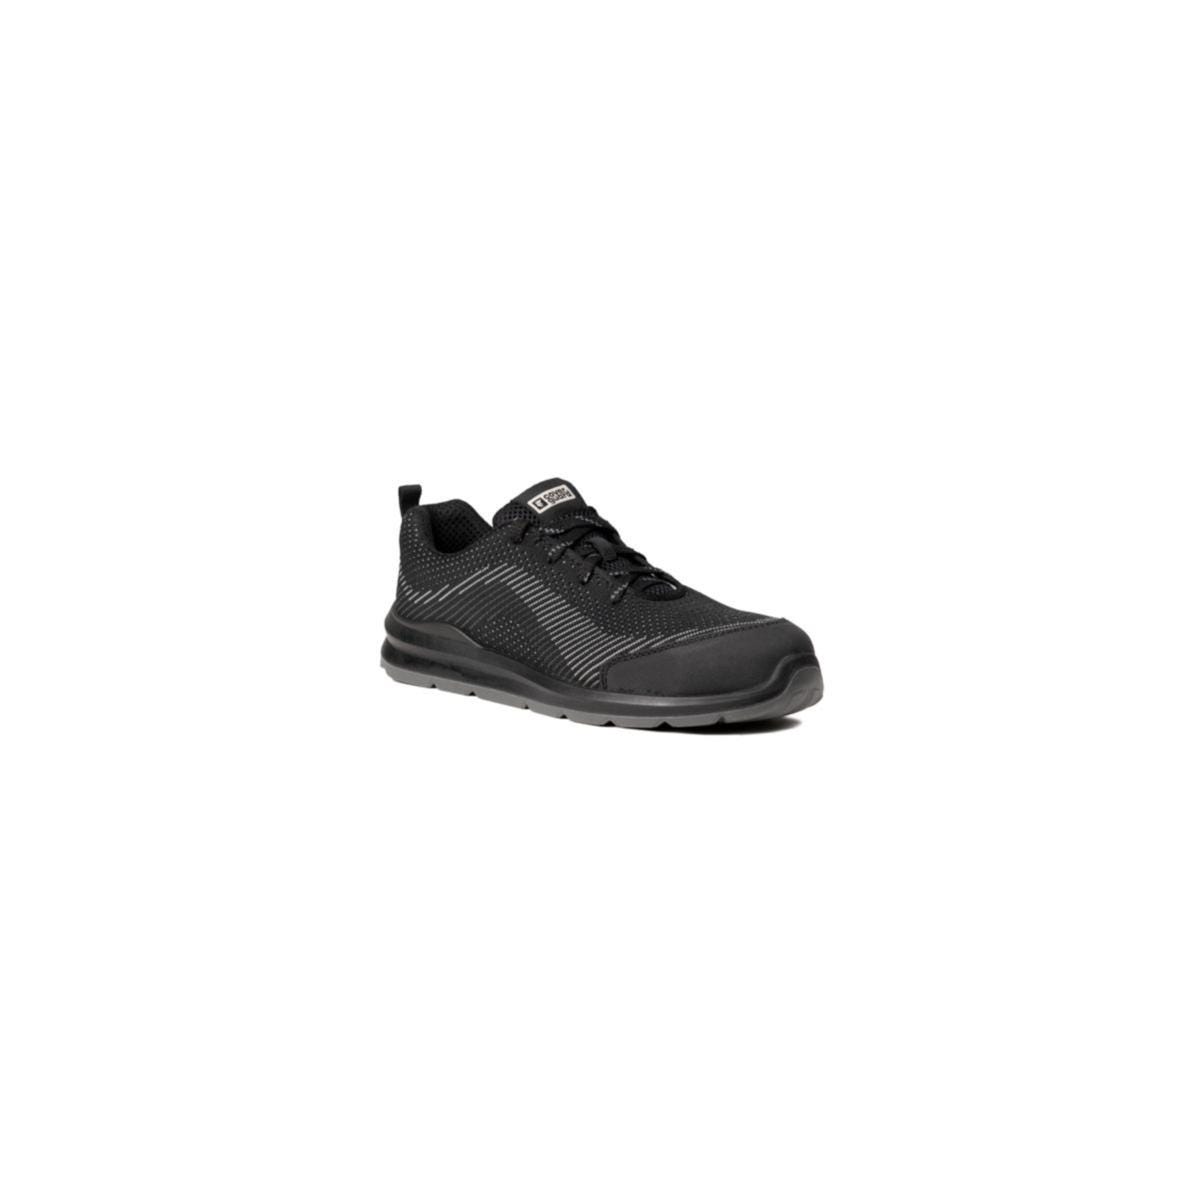 Chaussures de sécurité MILERITE S1P Basse Noir/Gris - COVERGUARD - Taille 42 0